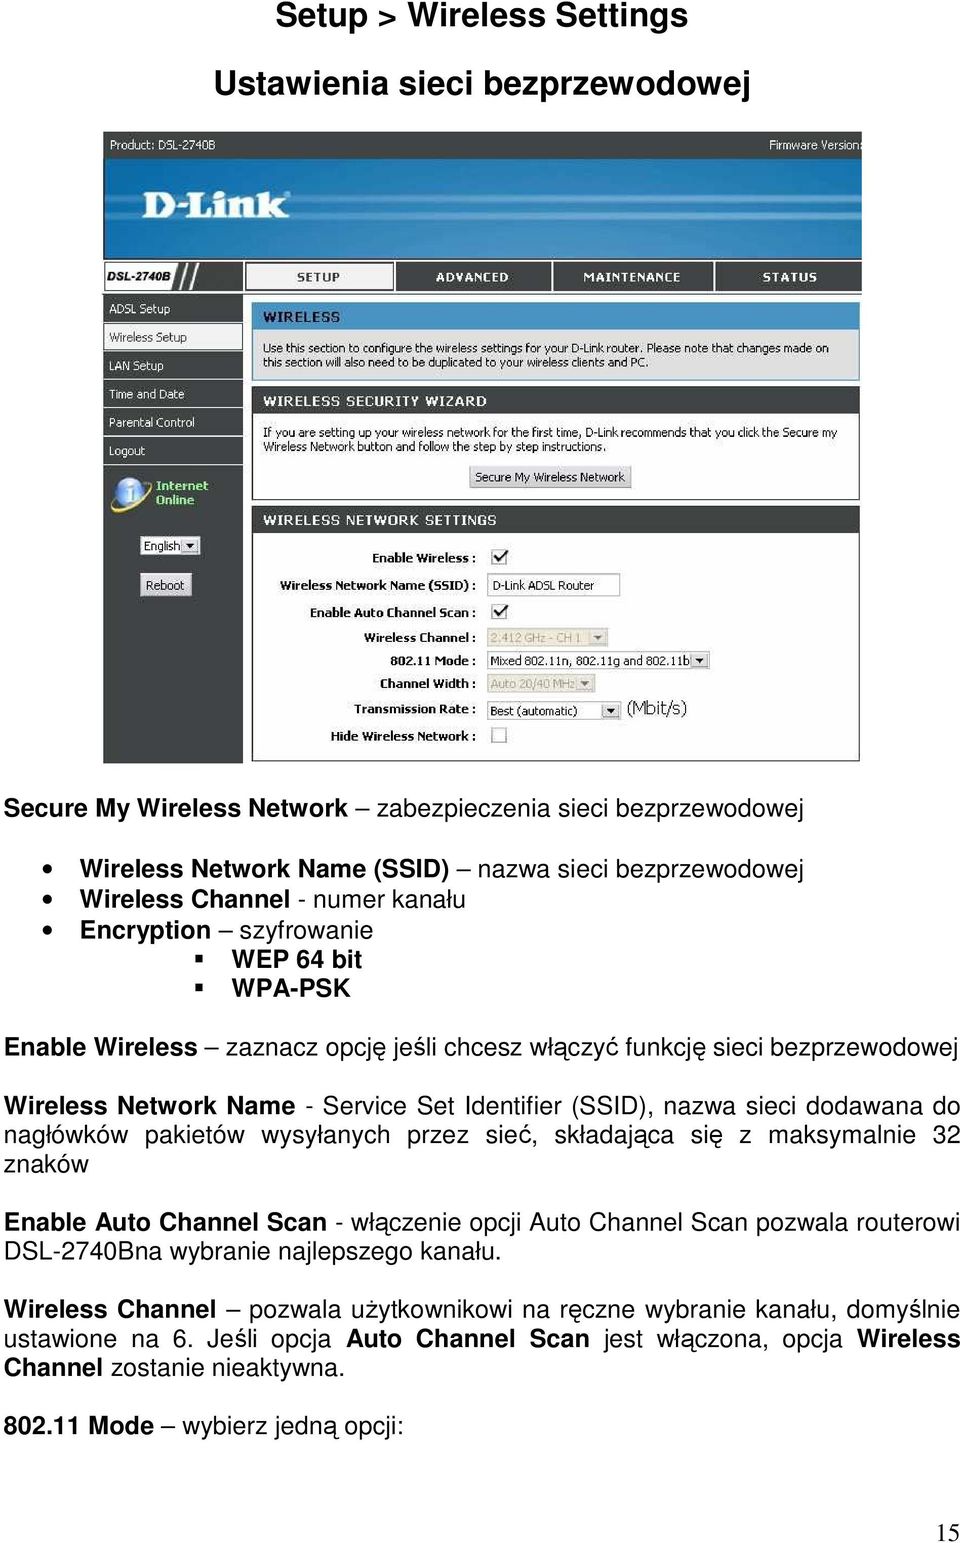 sieci dodawana do nagłówków pakietów wysyłanych przez sieć, składająca się z maksymalnie 32 znaków Enable Auto Channel Scan - włączenie opcji Auto Channel Scan pozwala routerowi DSL-2740Bna wybranie